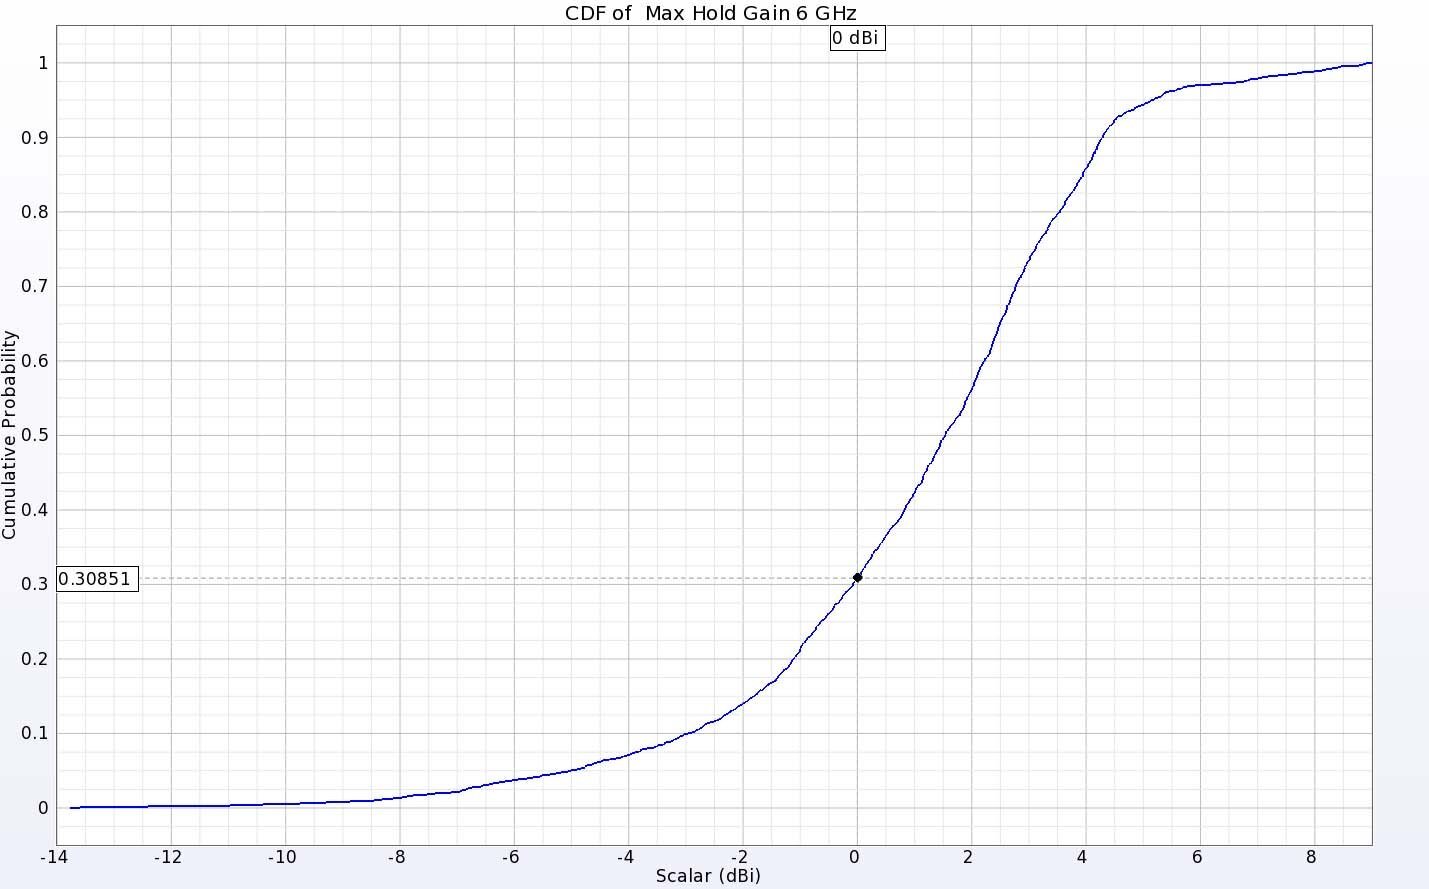 图 12：两根天线在 6 千兆赫频率下的 EIRP CDF 图显示，约 70% 的方向都有正增益。